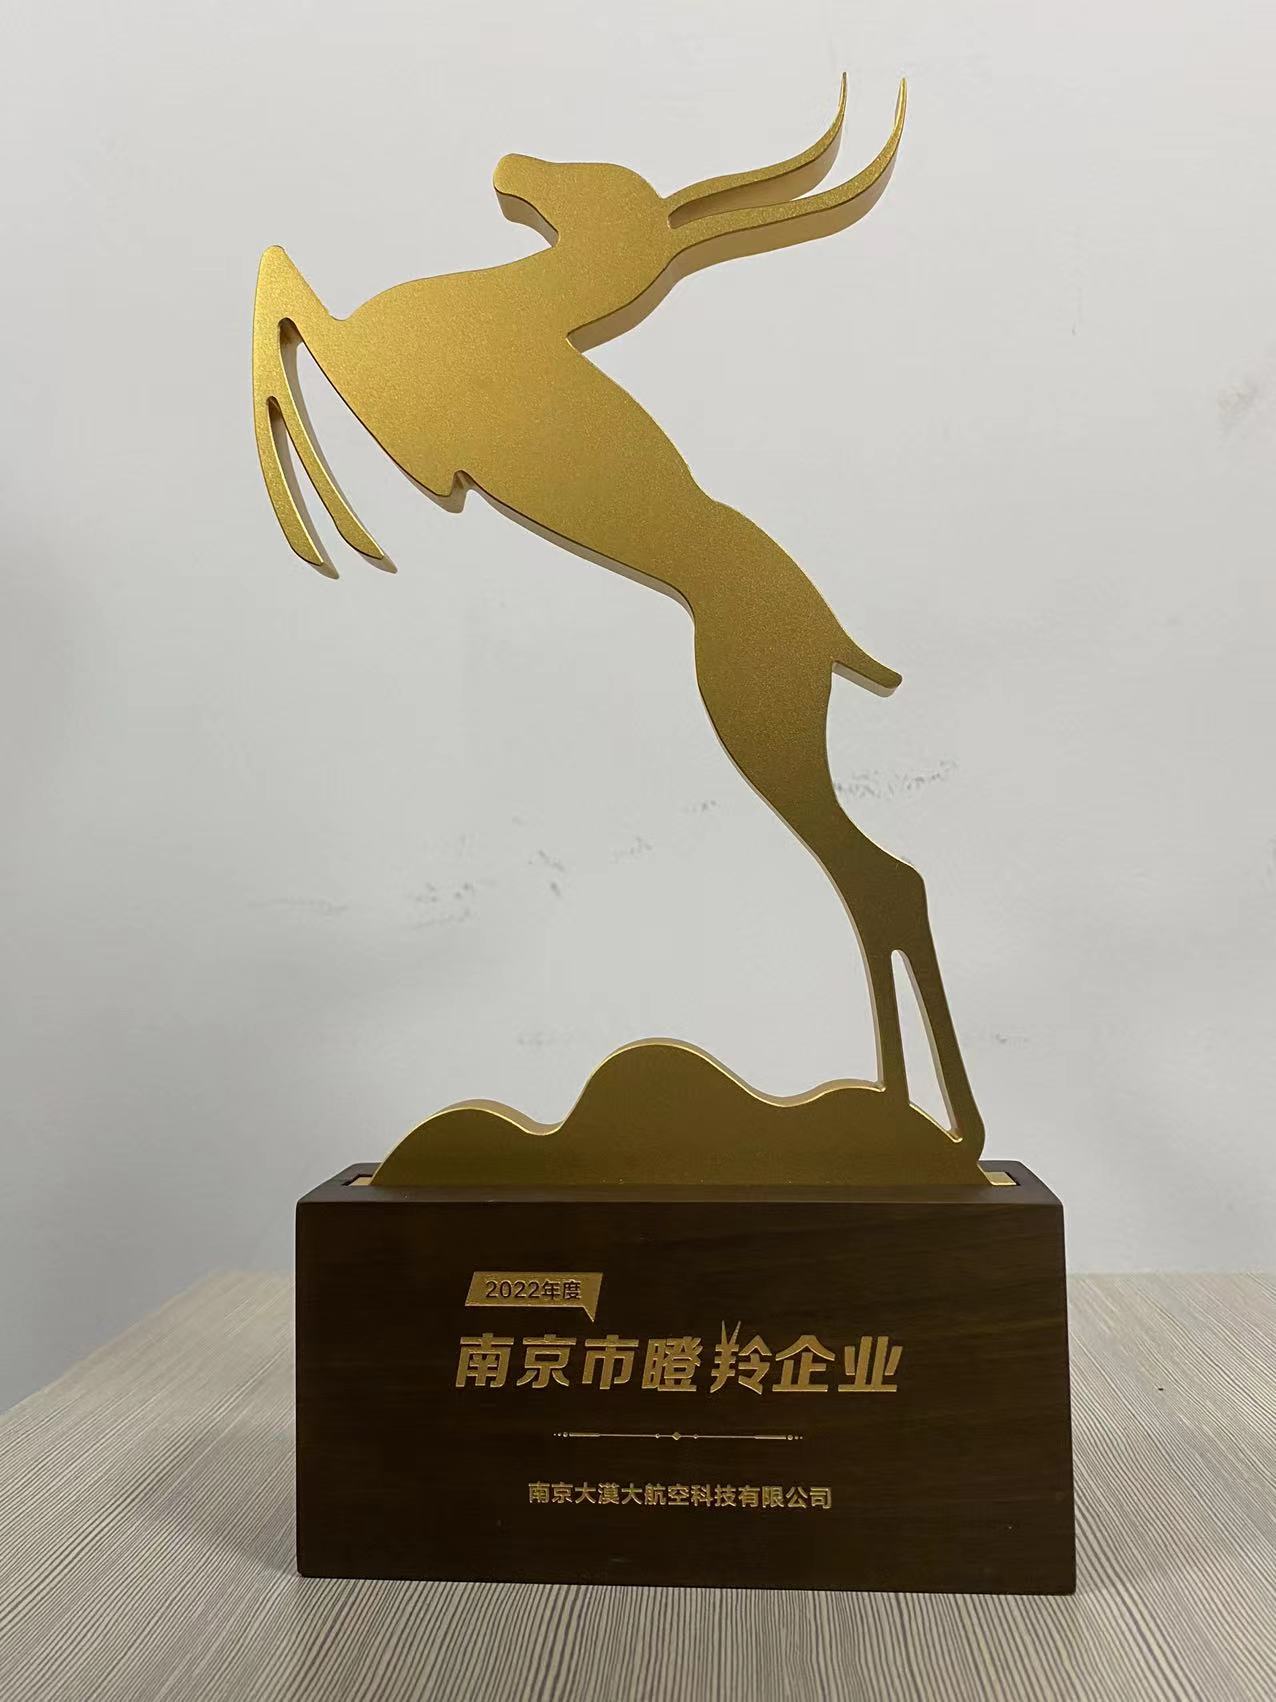 南京大漠大航空科技有限公司榮獲“2022年度南京市瞪羚企業”榮譽